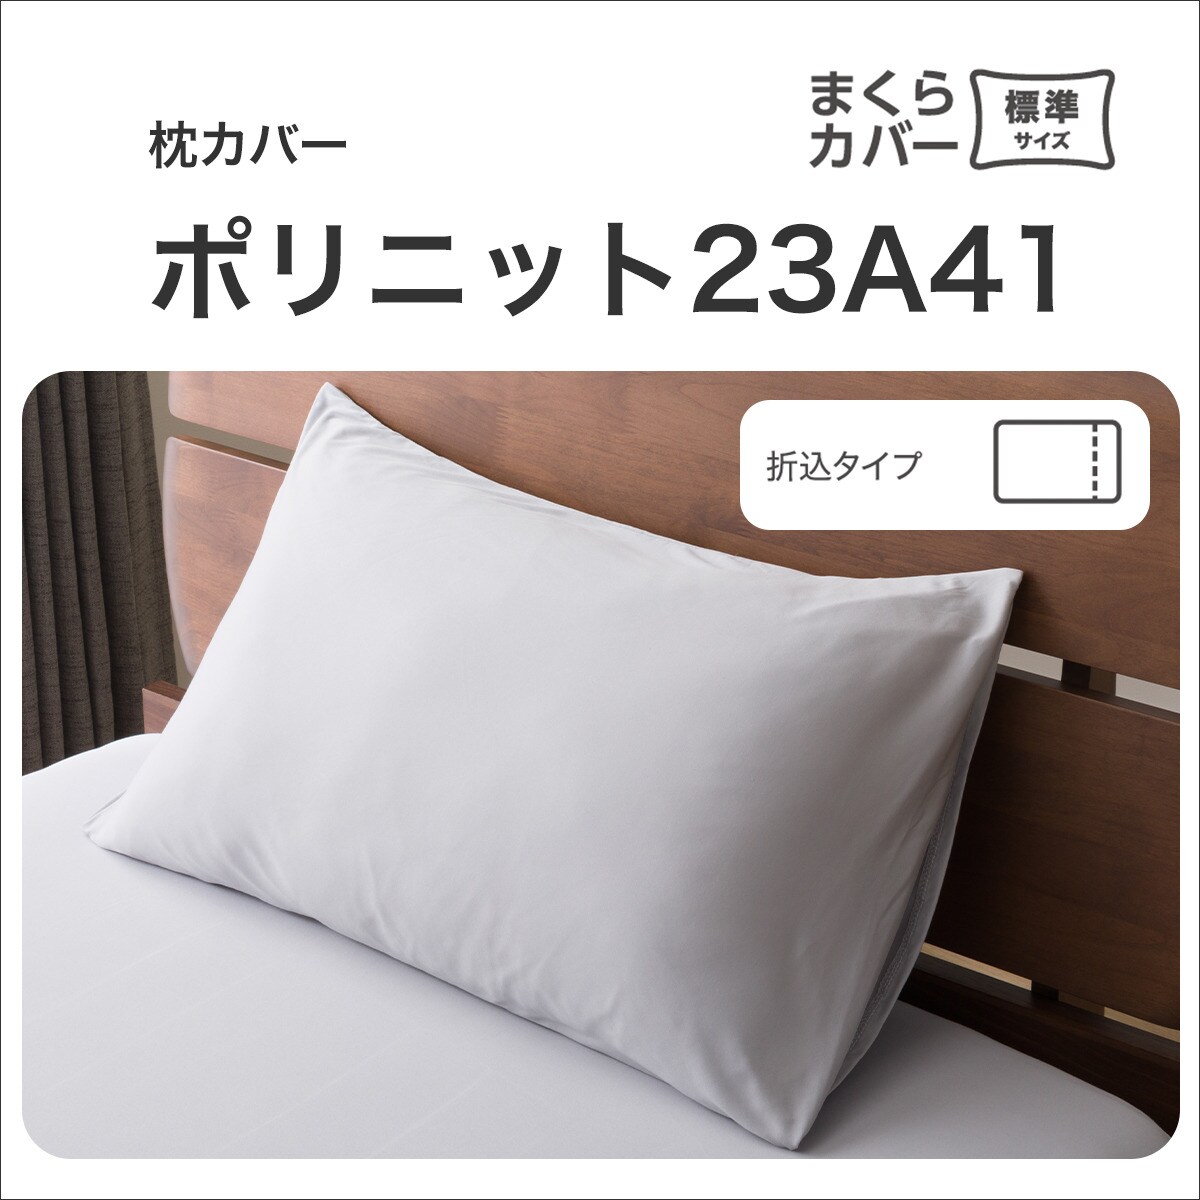 枕カバー(ポリニット 23A41)   【1年保証】